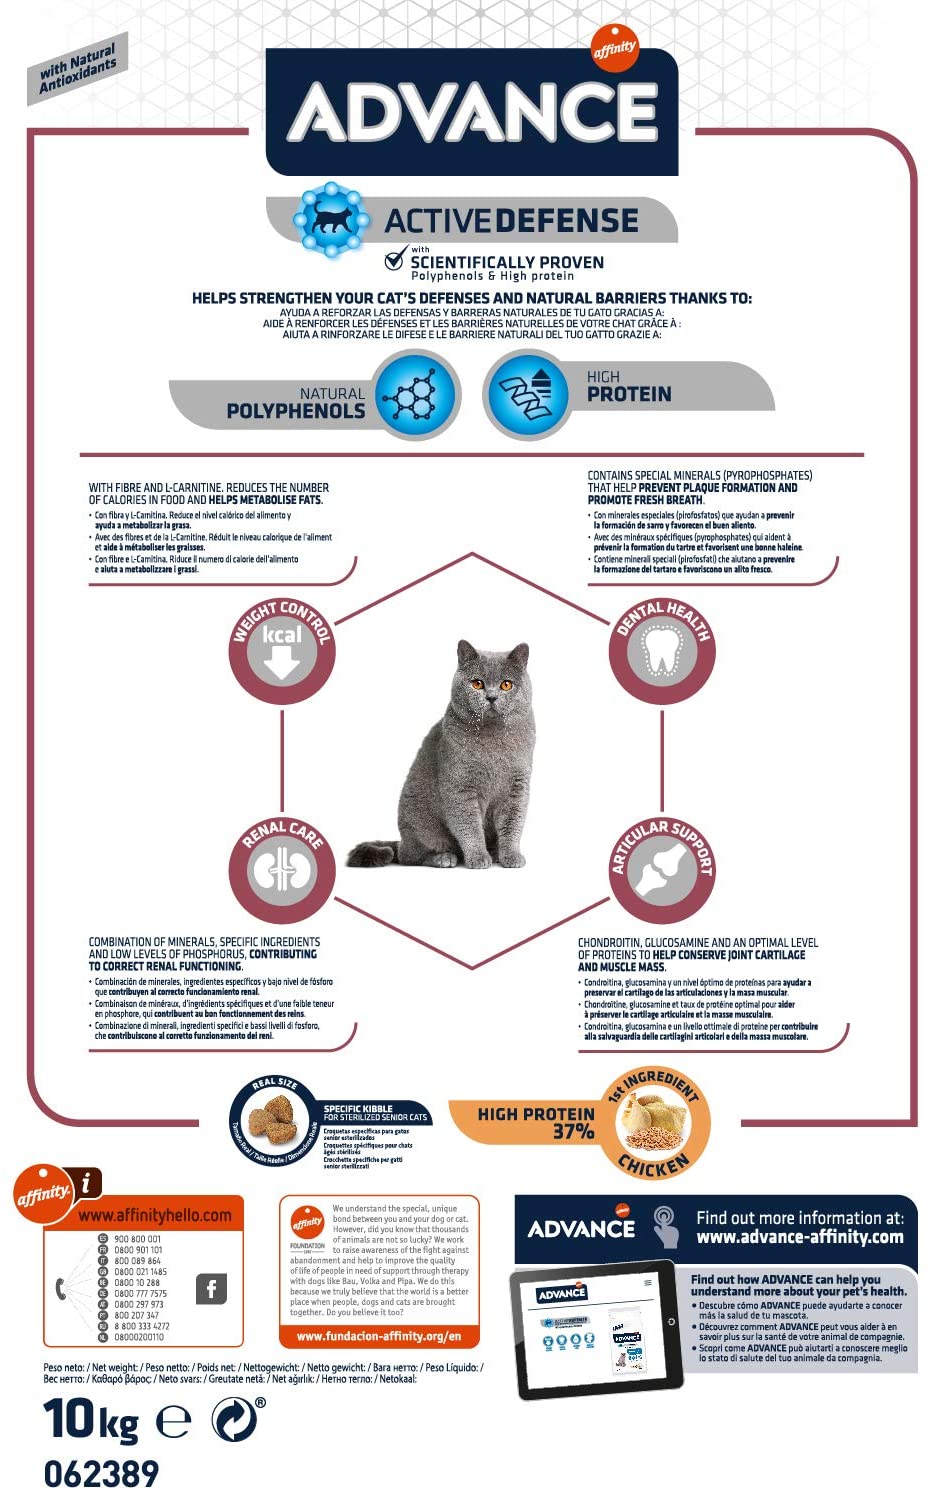  Advance Senior Sterilized - Pienso para Gatos Esterilizados de más de 10 años - 10 Kg 